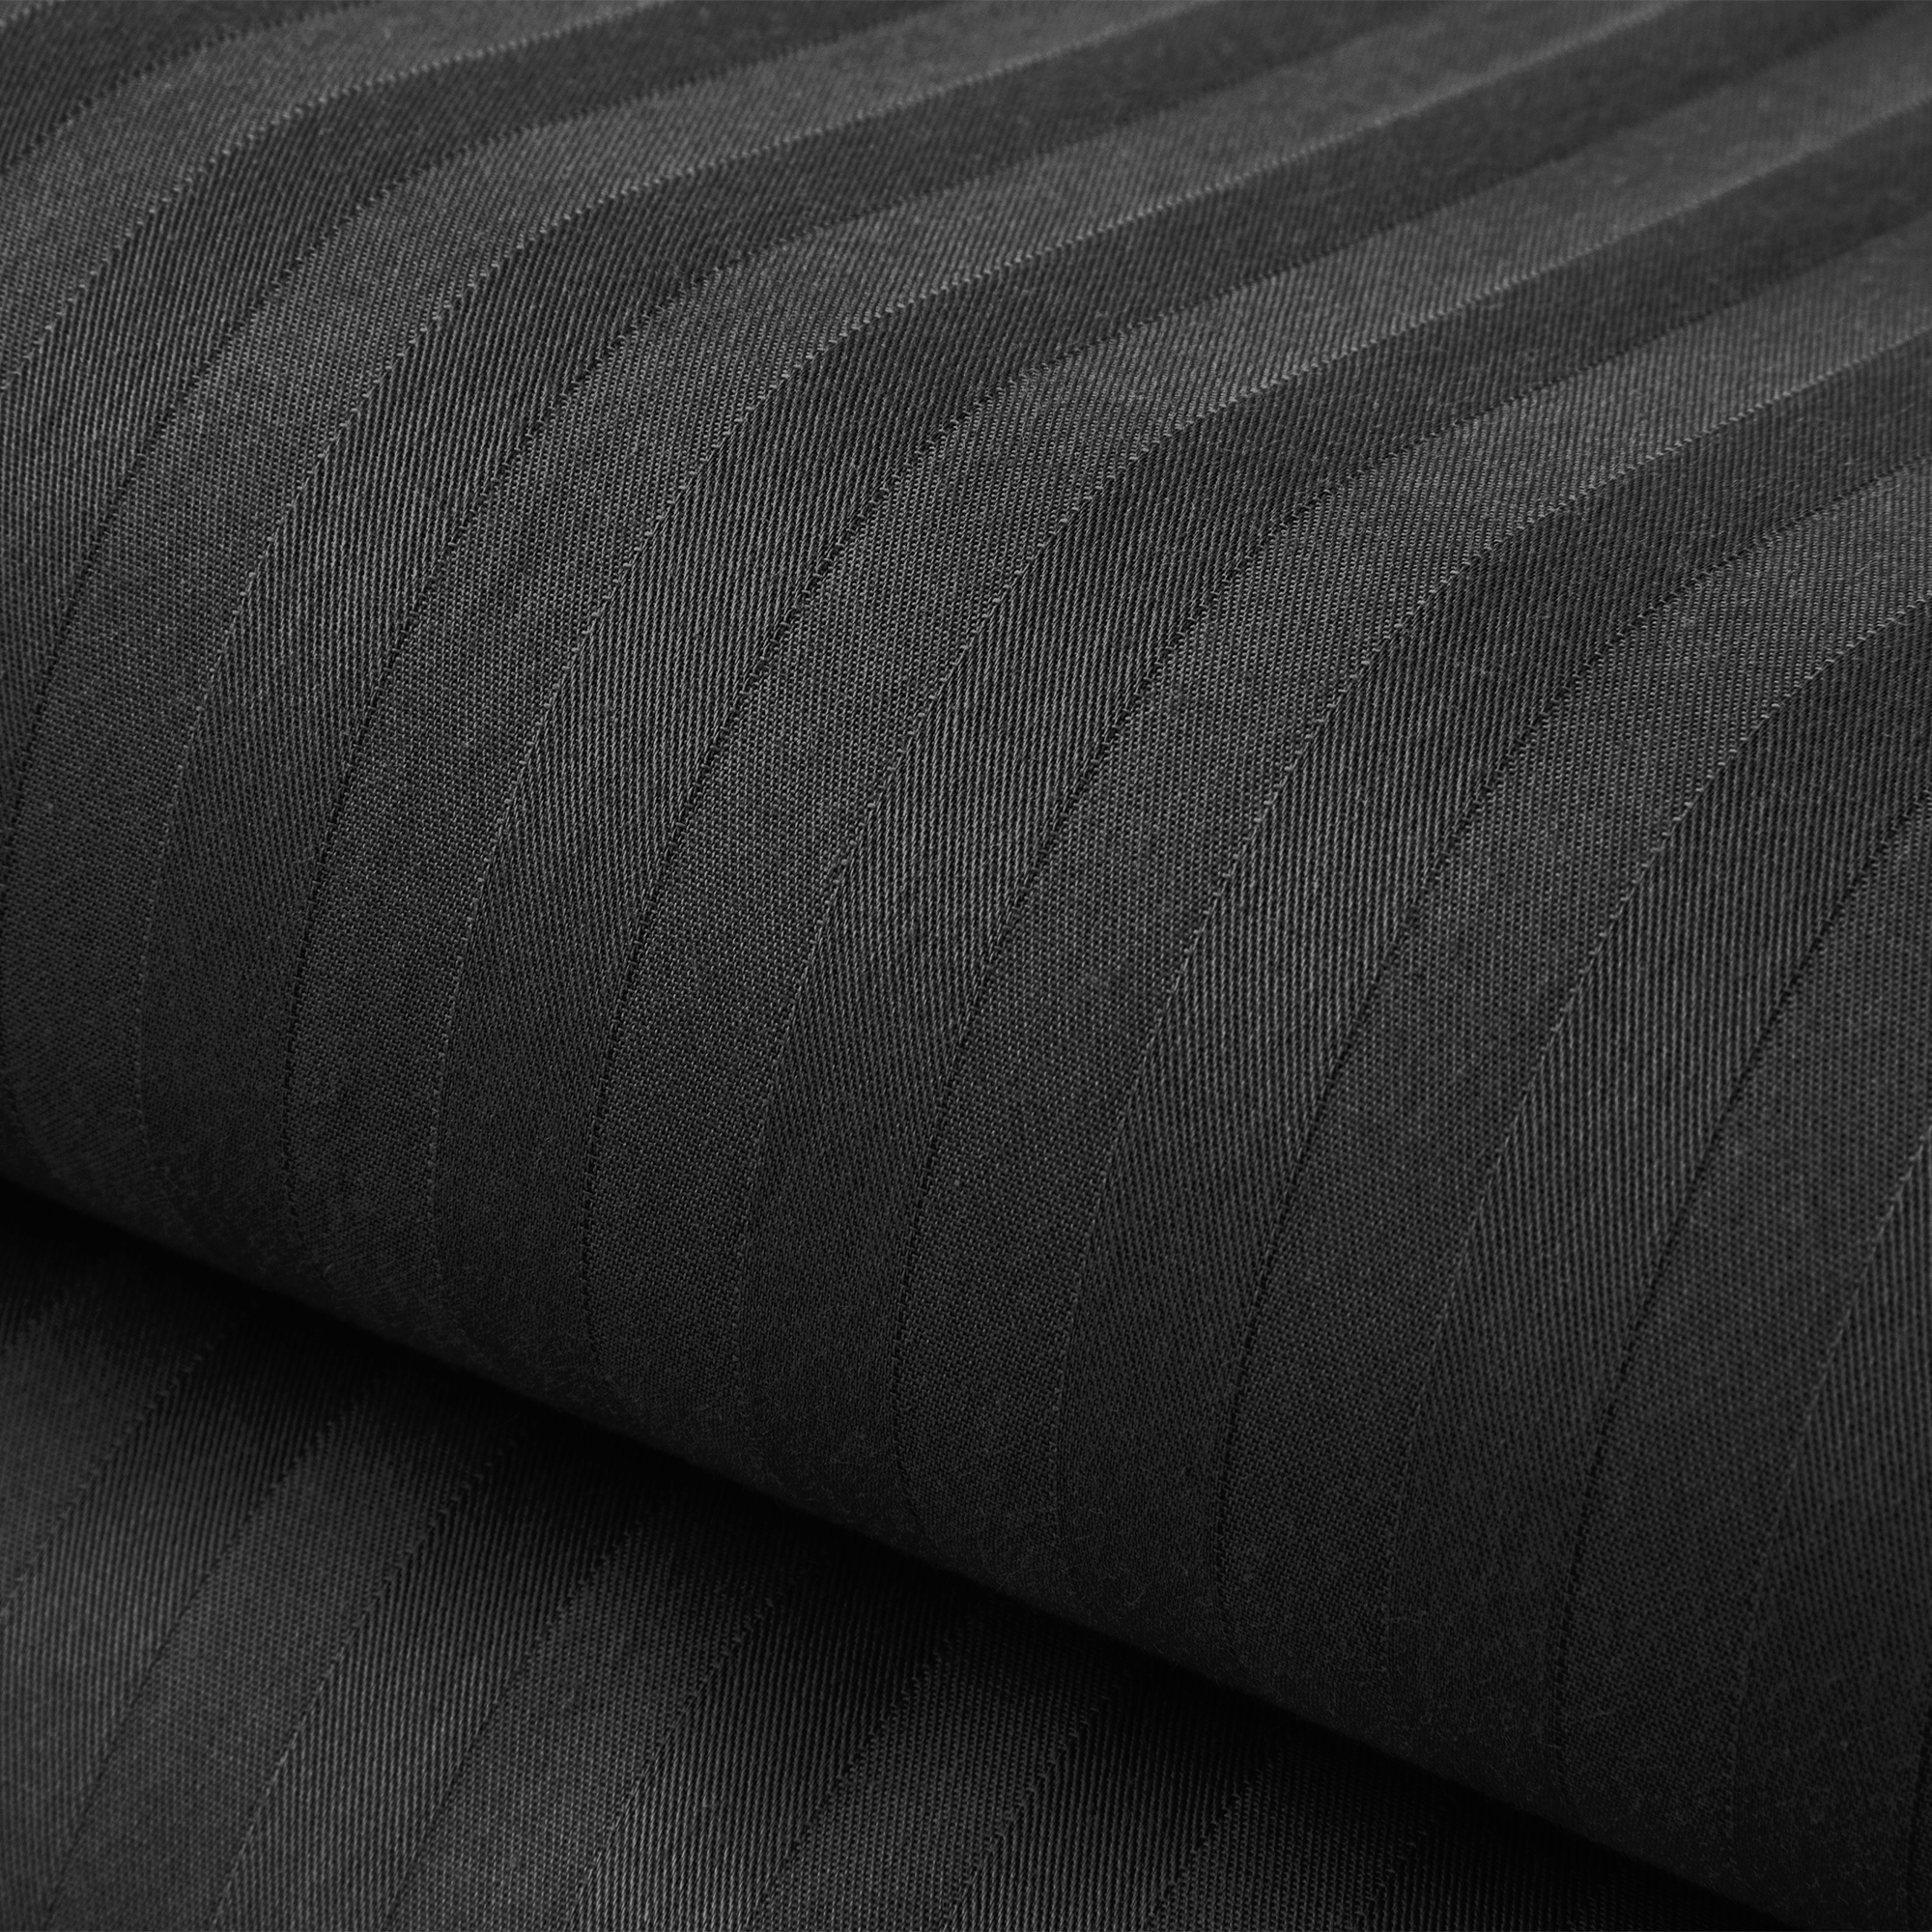 Комплект постельного белья Verossa 2.0СП Black страйп-сатин наволочки 70х70см 100% хлопок - фото 8